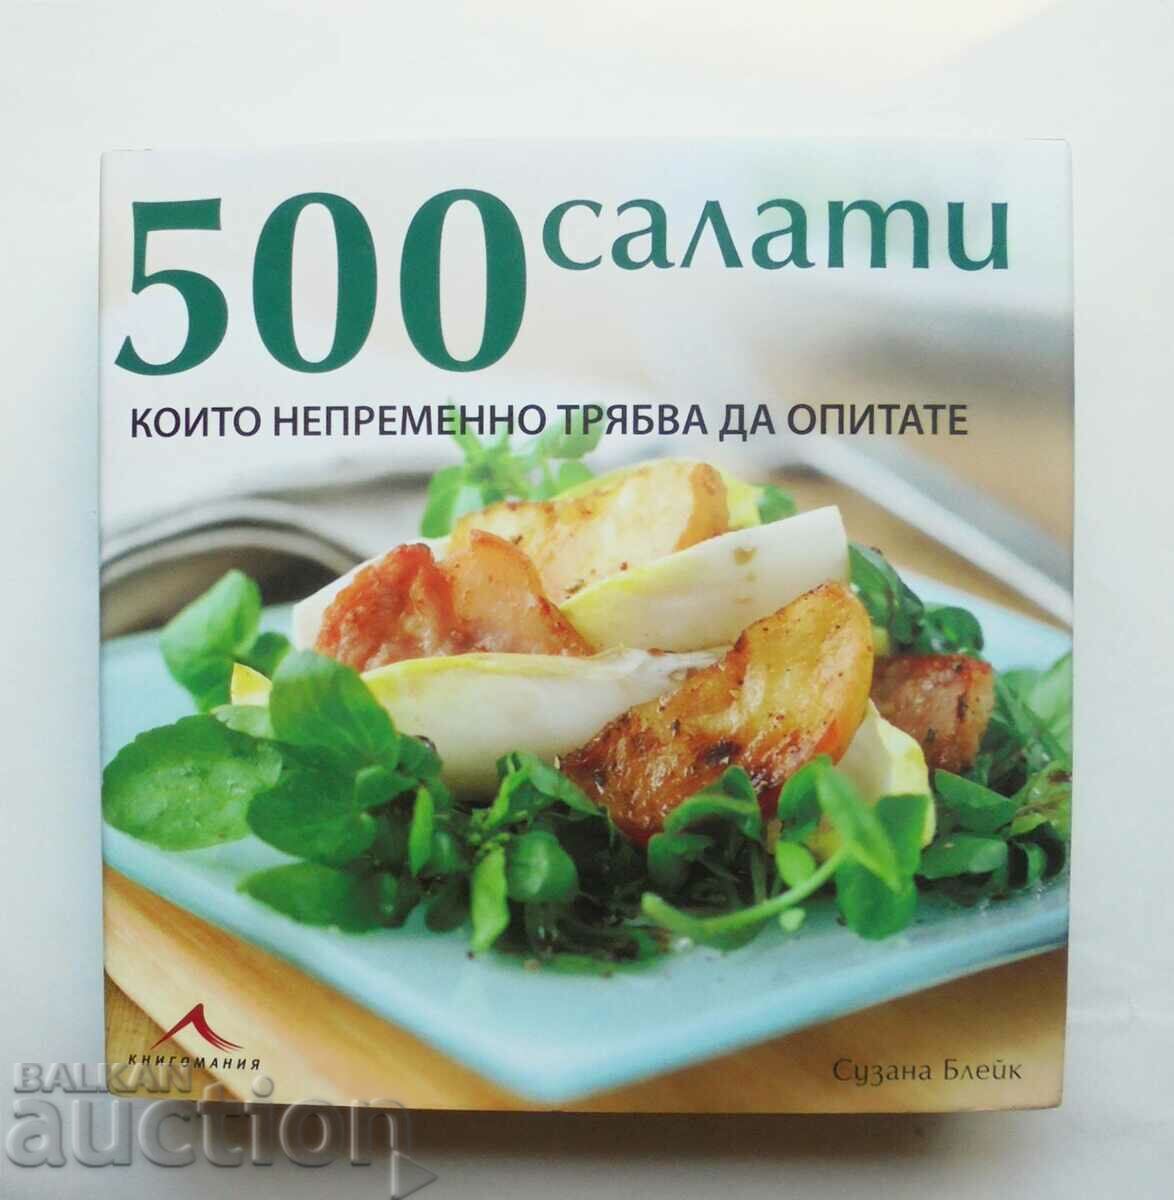 500 салати, които непременно трябва да опитате Сузана Блейк